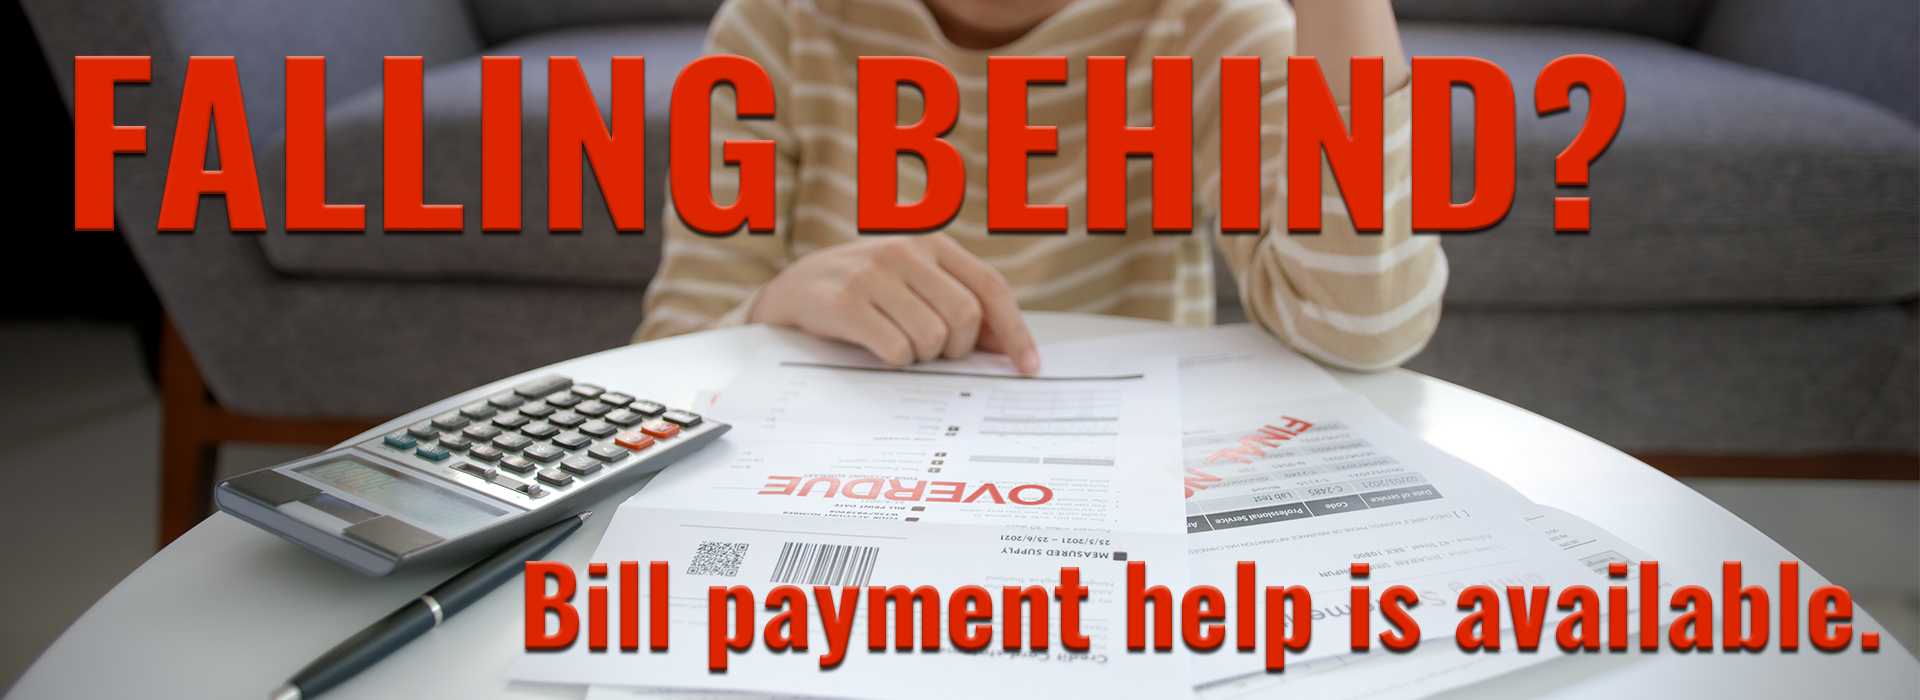 Bill payment help